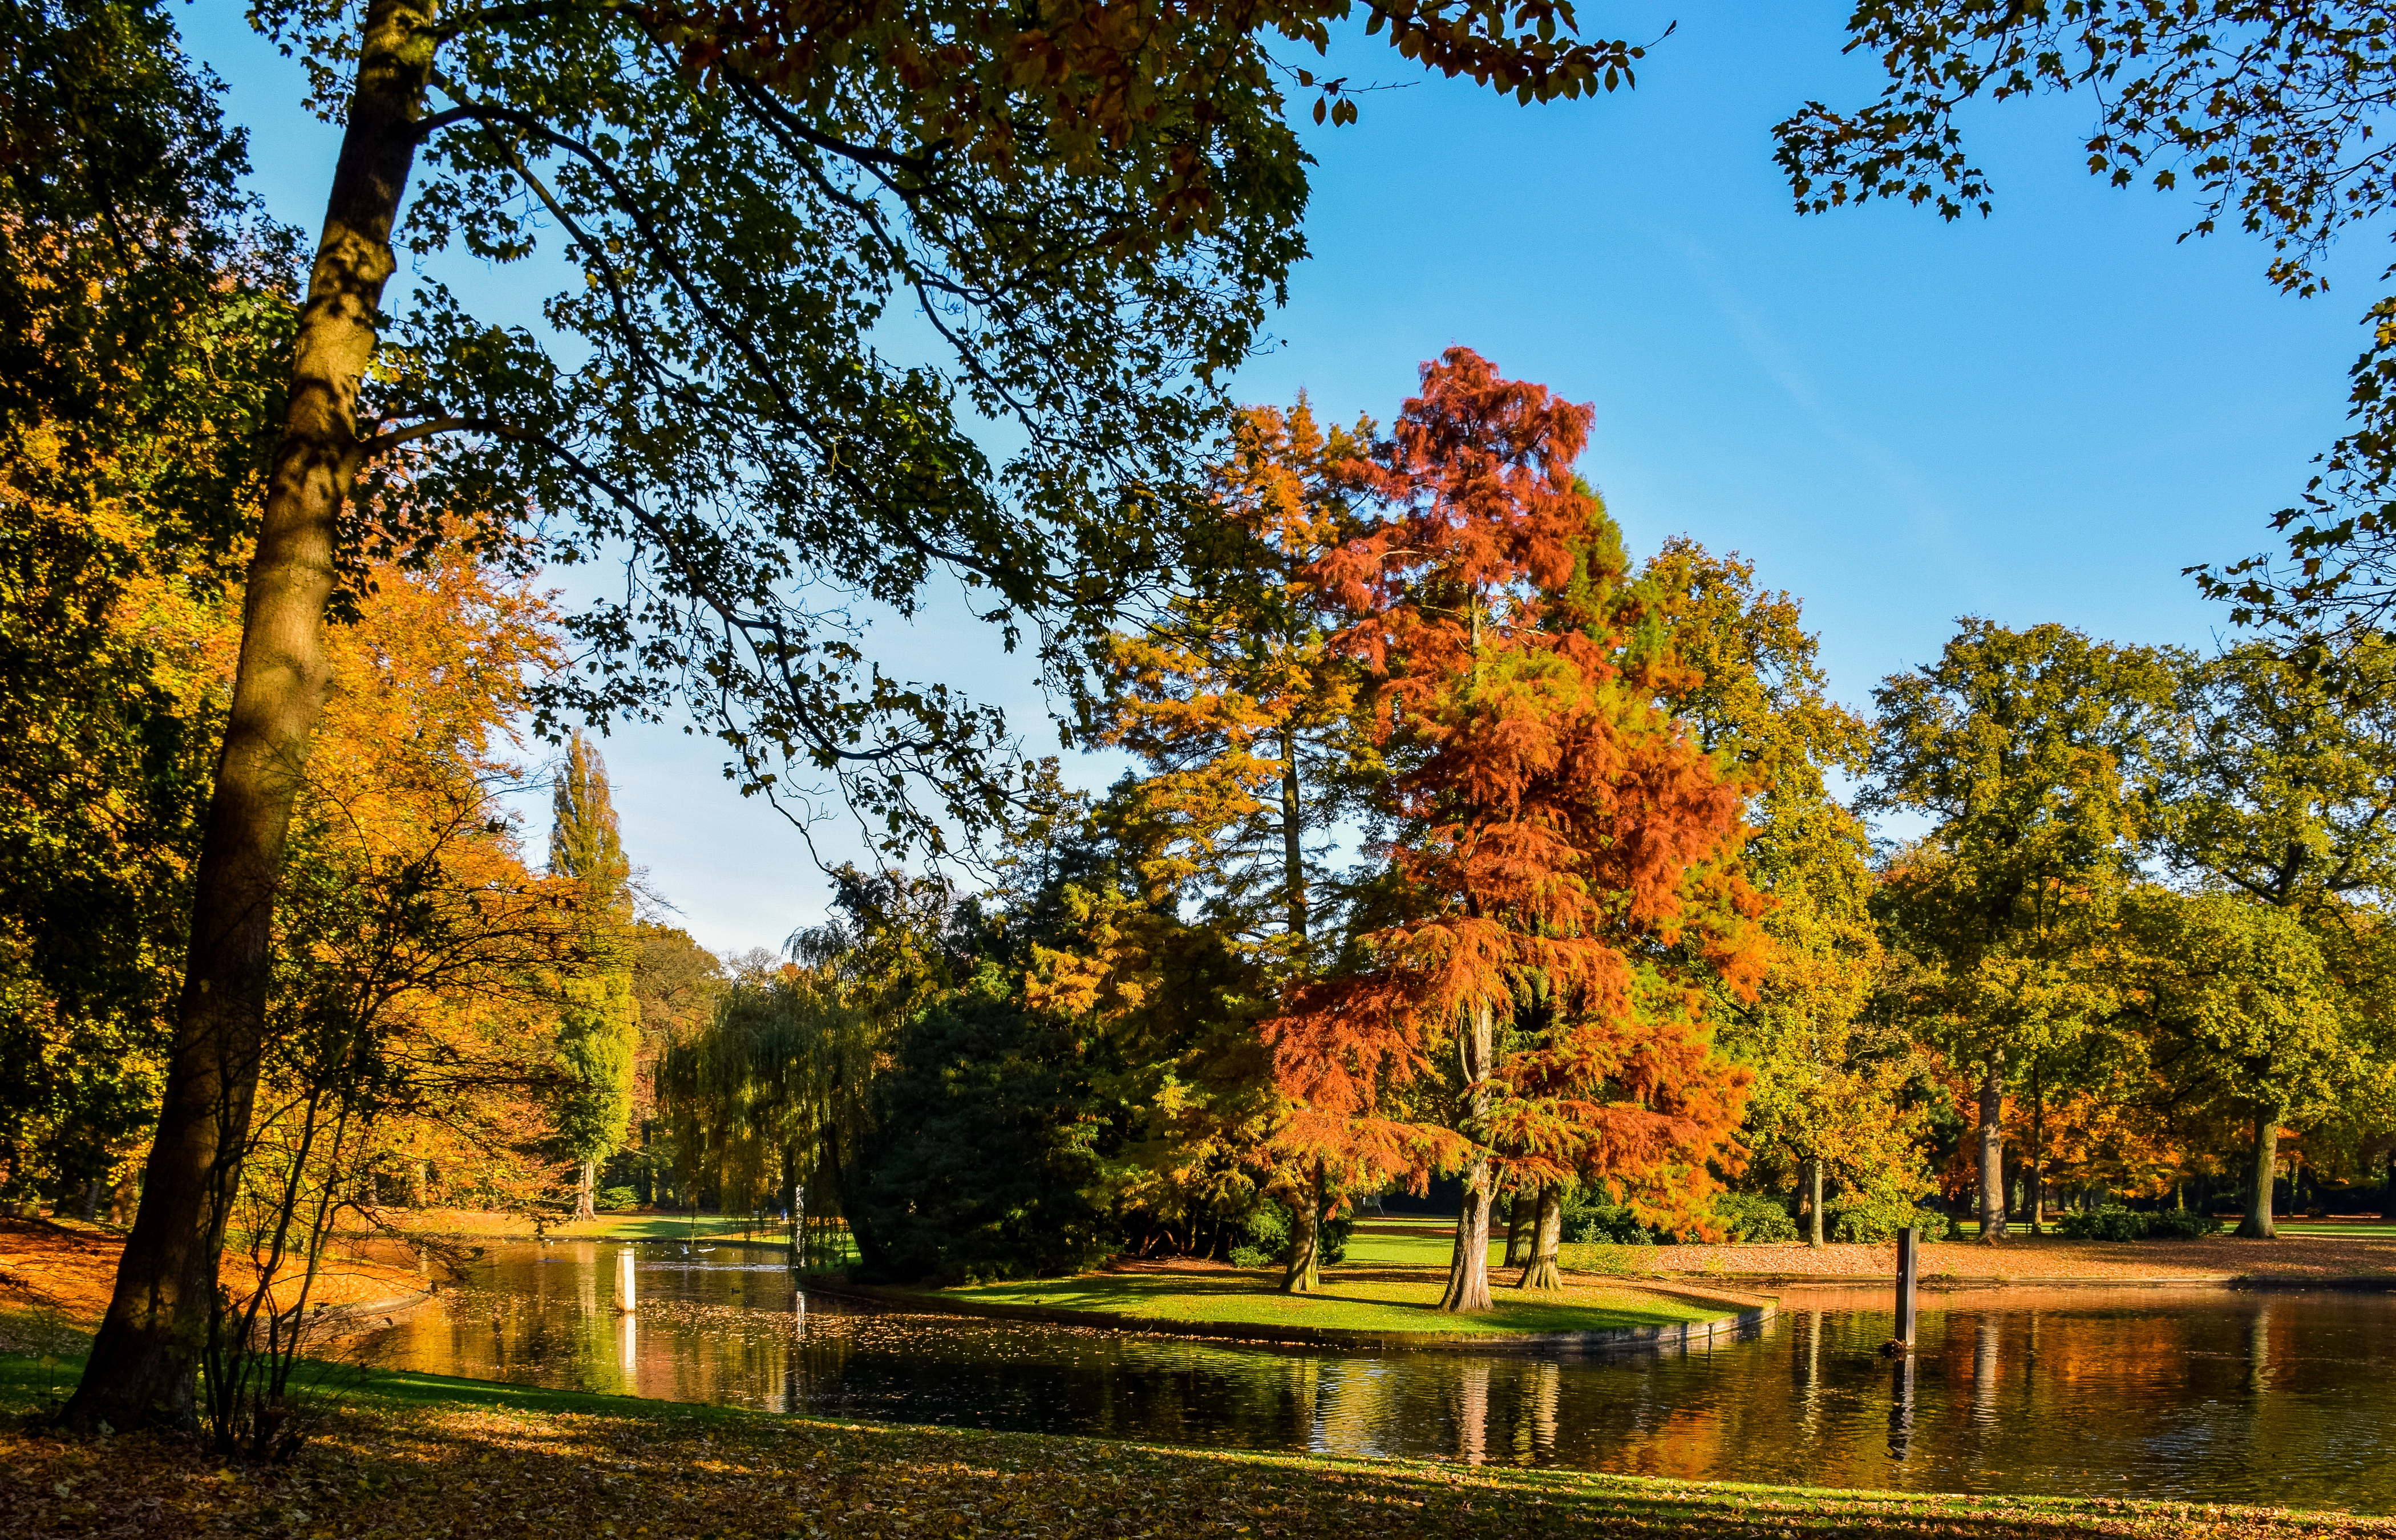 Скачать обои бесплатно Природа, Осень, Парк, Дерево, Пруд, Нидерланды, Фотографии картинка на рабочий стол ПК